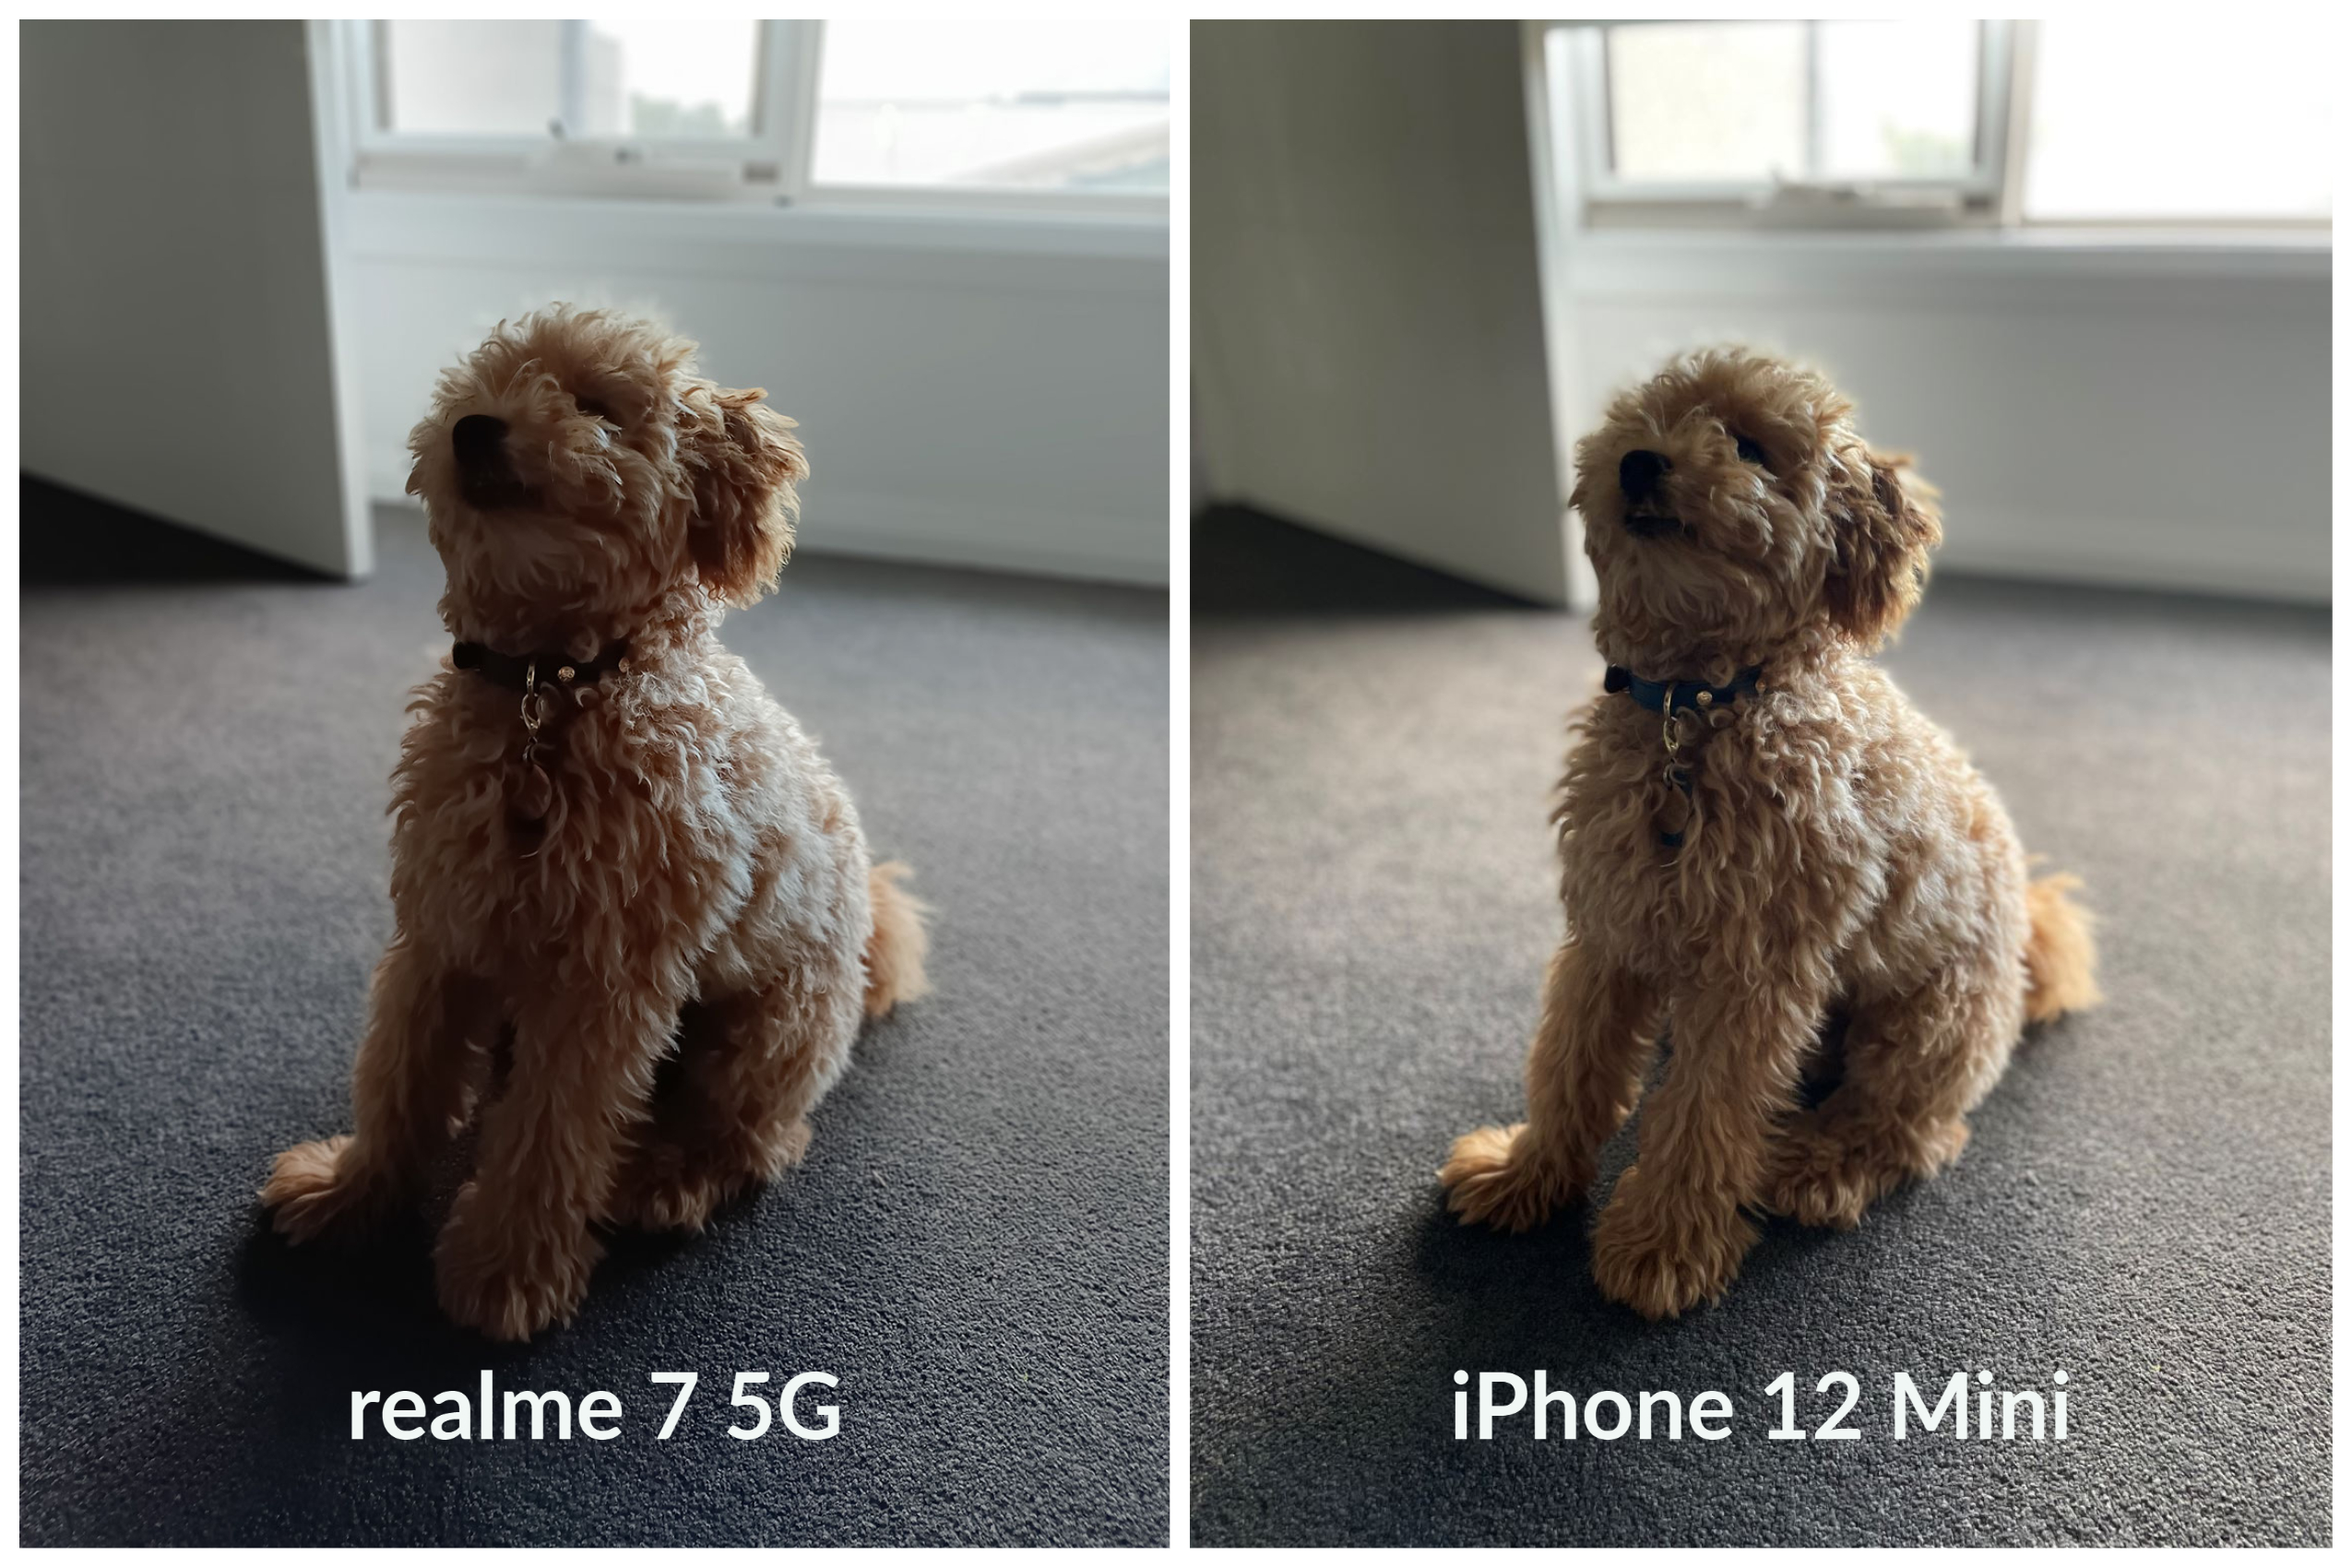 realme 7 5G camera quality comparisons.